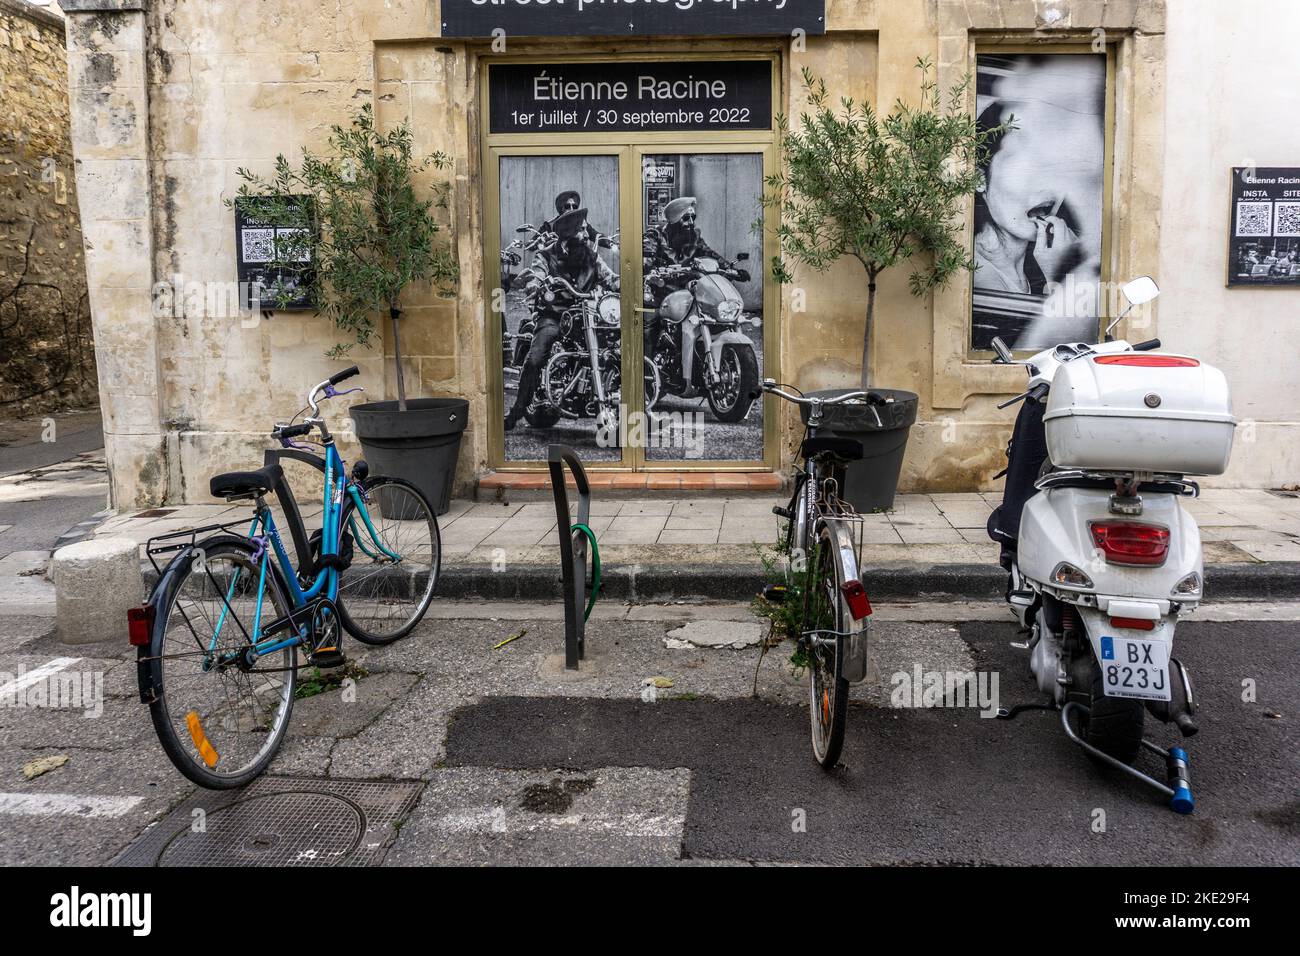 Dos bicicletas y una scooter aparcados delante de un cartel de una exposición de fotografía callejera de Etienne Racine en Arles, Francia. Foto de stock